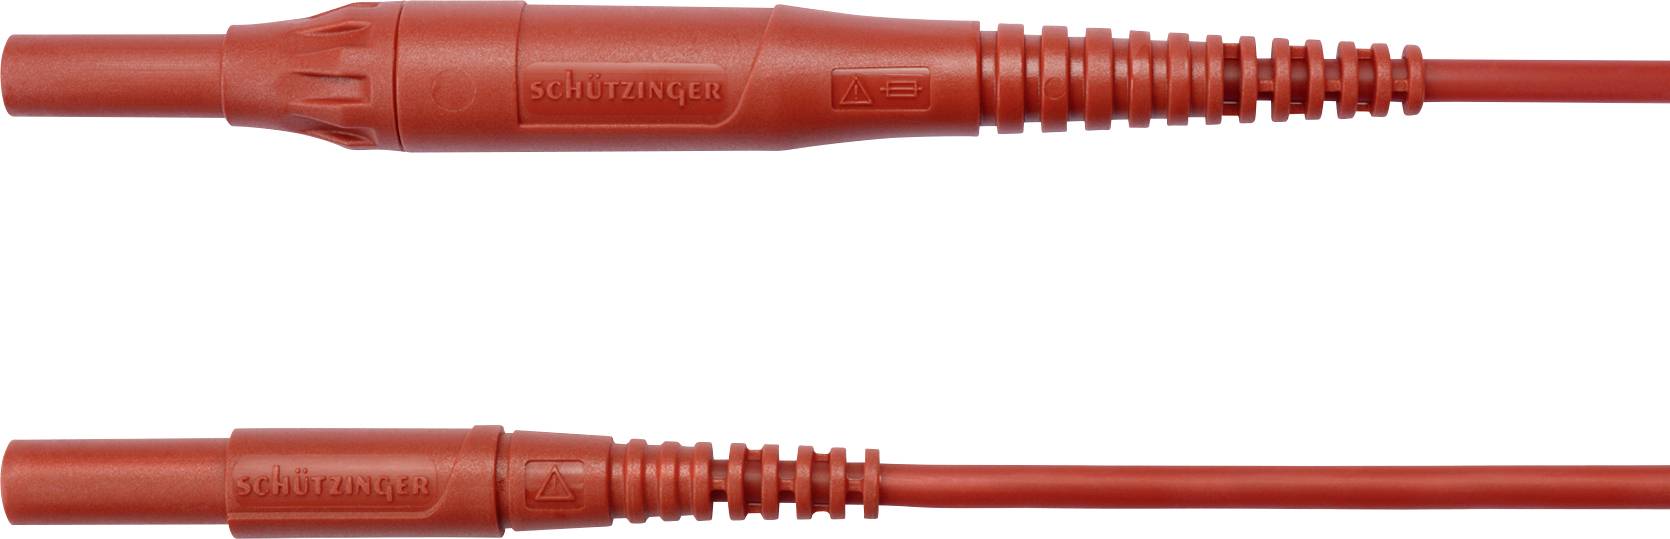 SCHÜTZINGER MSFK B441 / 1 / 100 / RT Messleitung [Stecker 4 mm - Stecker 4 mm] 100.00 cm Rot 5